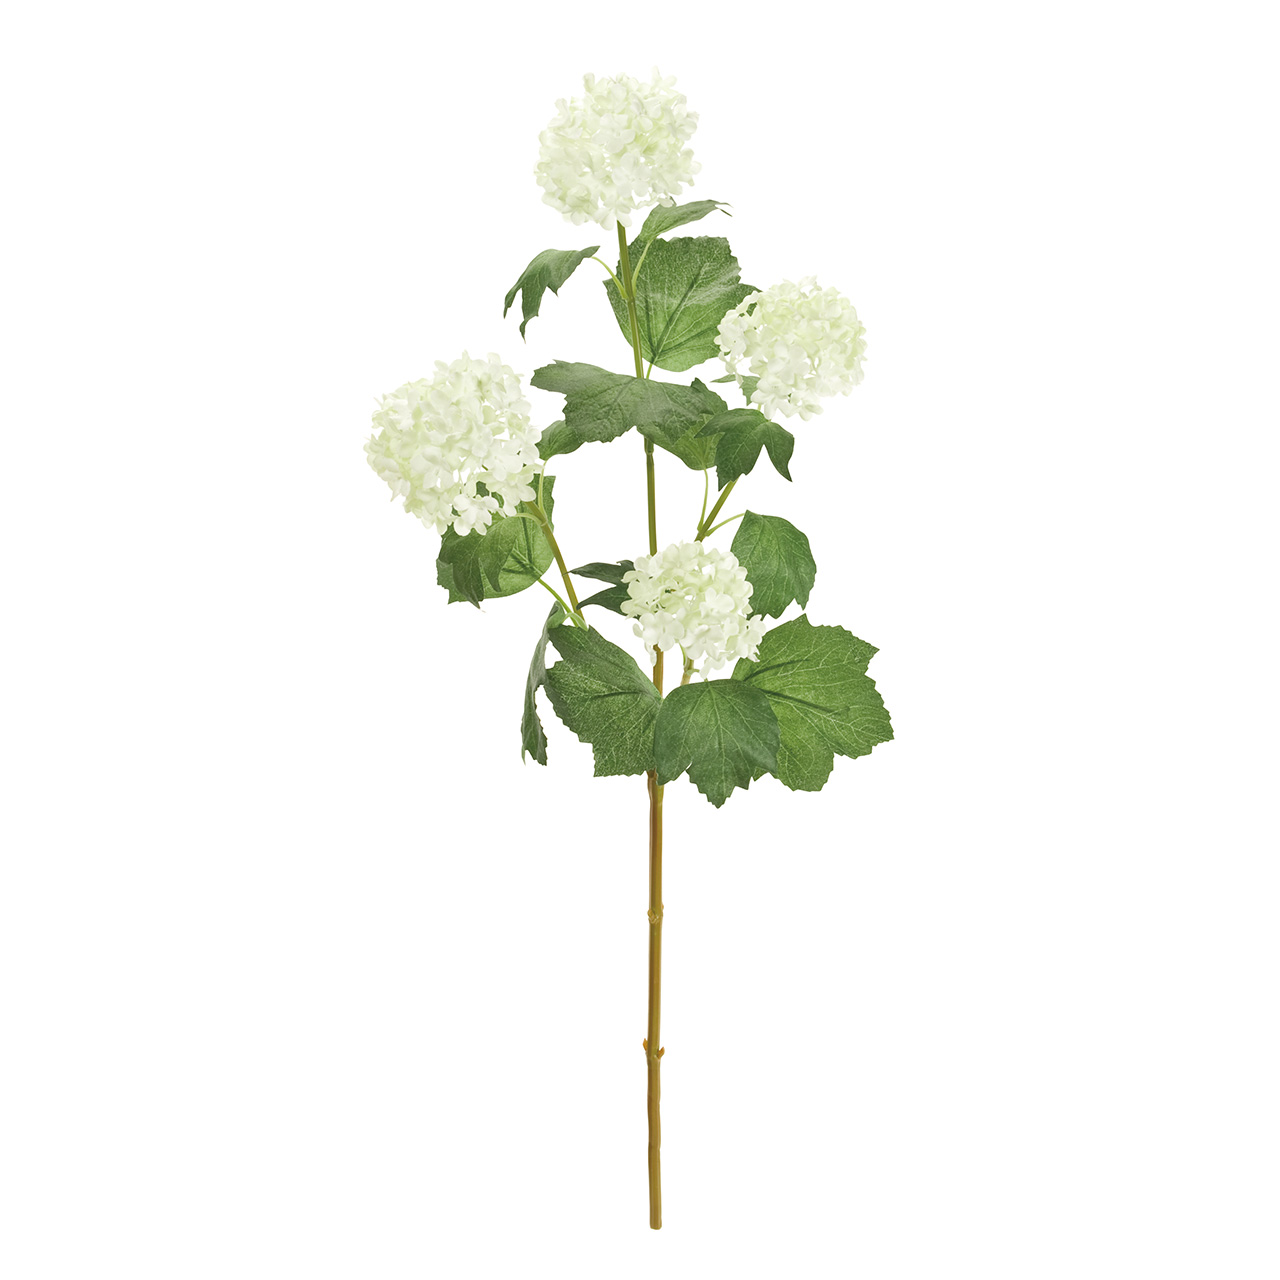 マイフラ 通販 Magiq メリースノーボール M ホワイト アーティフィシャルフラワー 造花 Fm 001 スノーボール 花房径 約6 5 8 全長 約58 5cm ホワイト Magiq アーティフィシャルフラワー 造花 全国にmagiq 花器 花資材などをお届けします